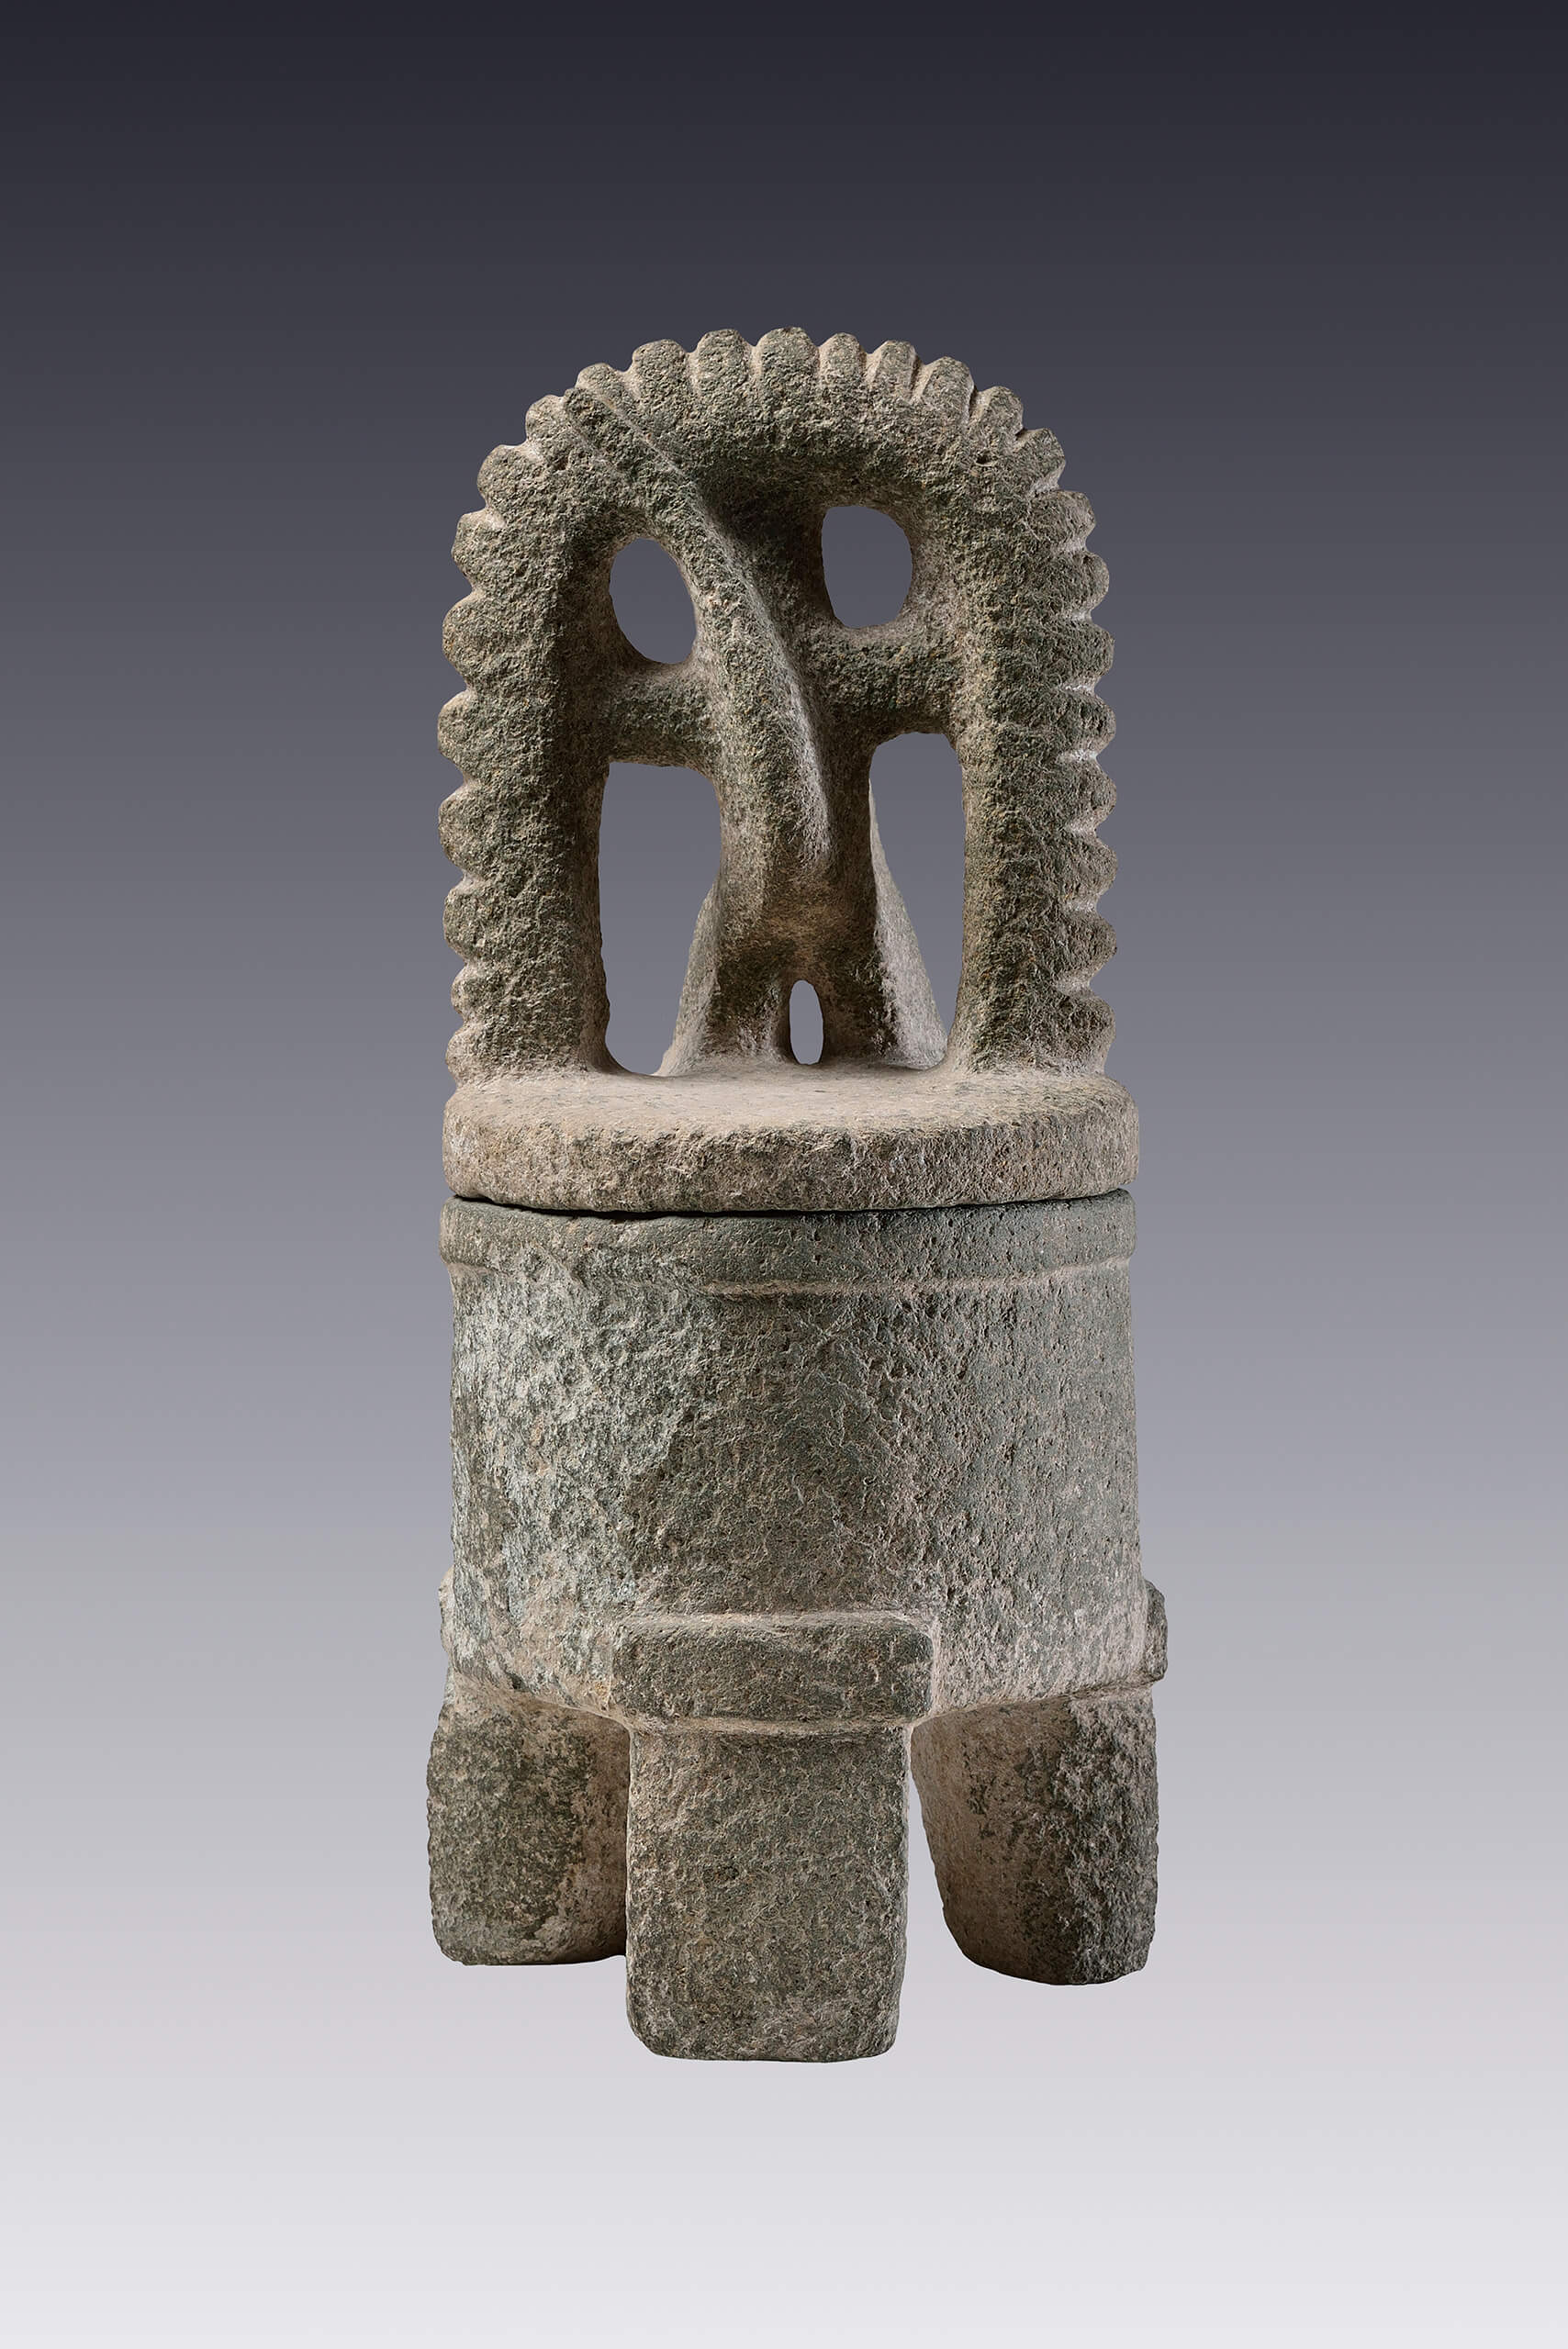  Vaso trípode con tapadera de mono | El México antiguo. Salas de Arte Prehispánico | Museo Amparo, Puebla